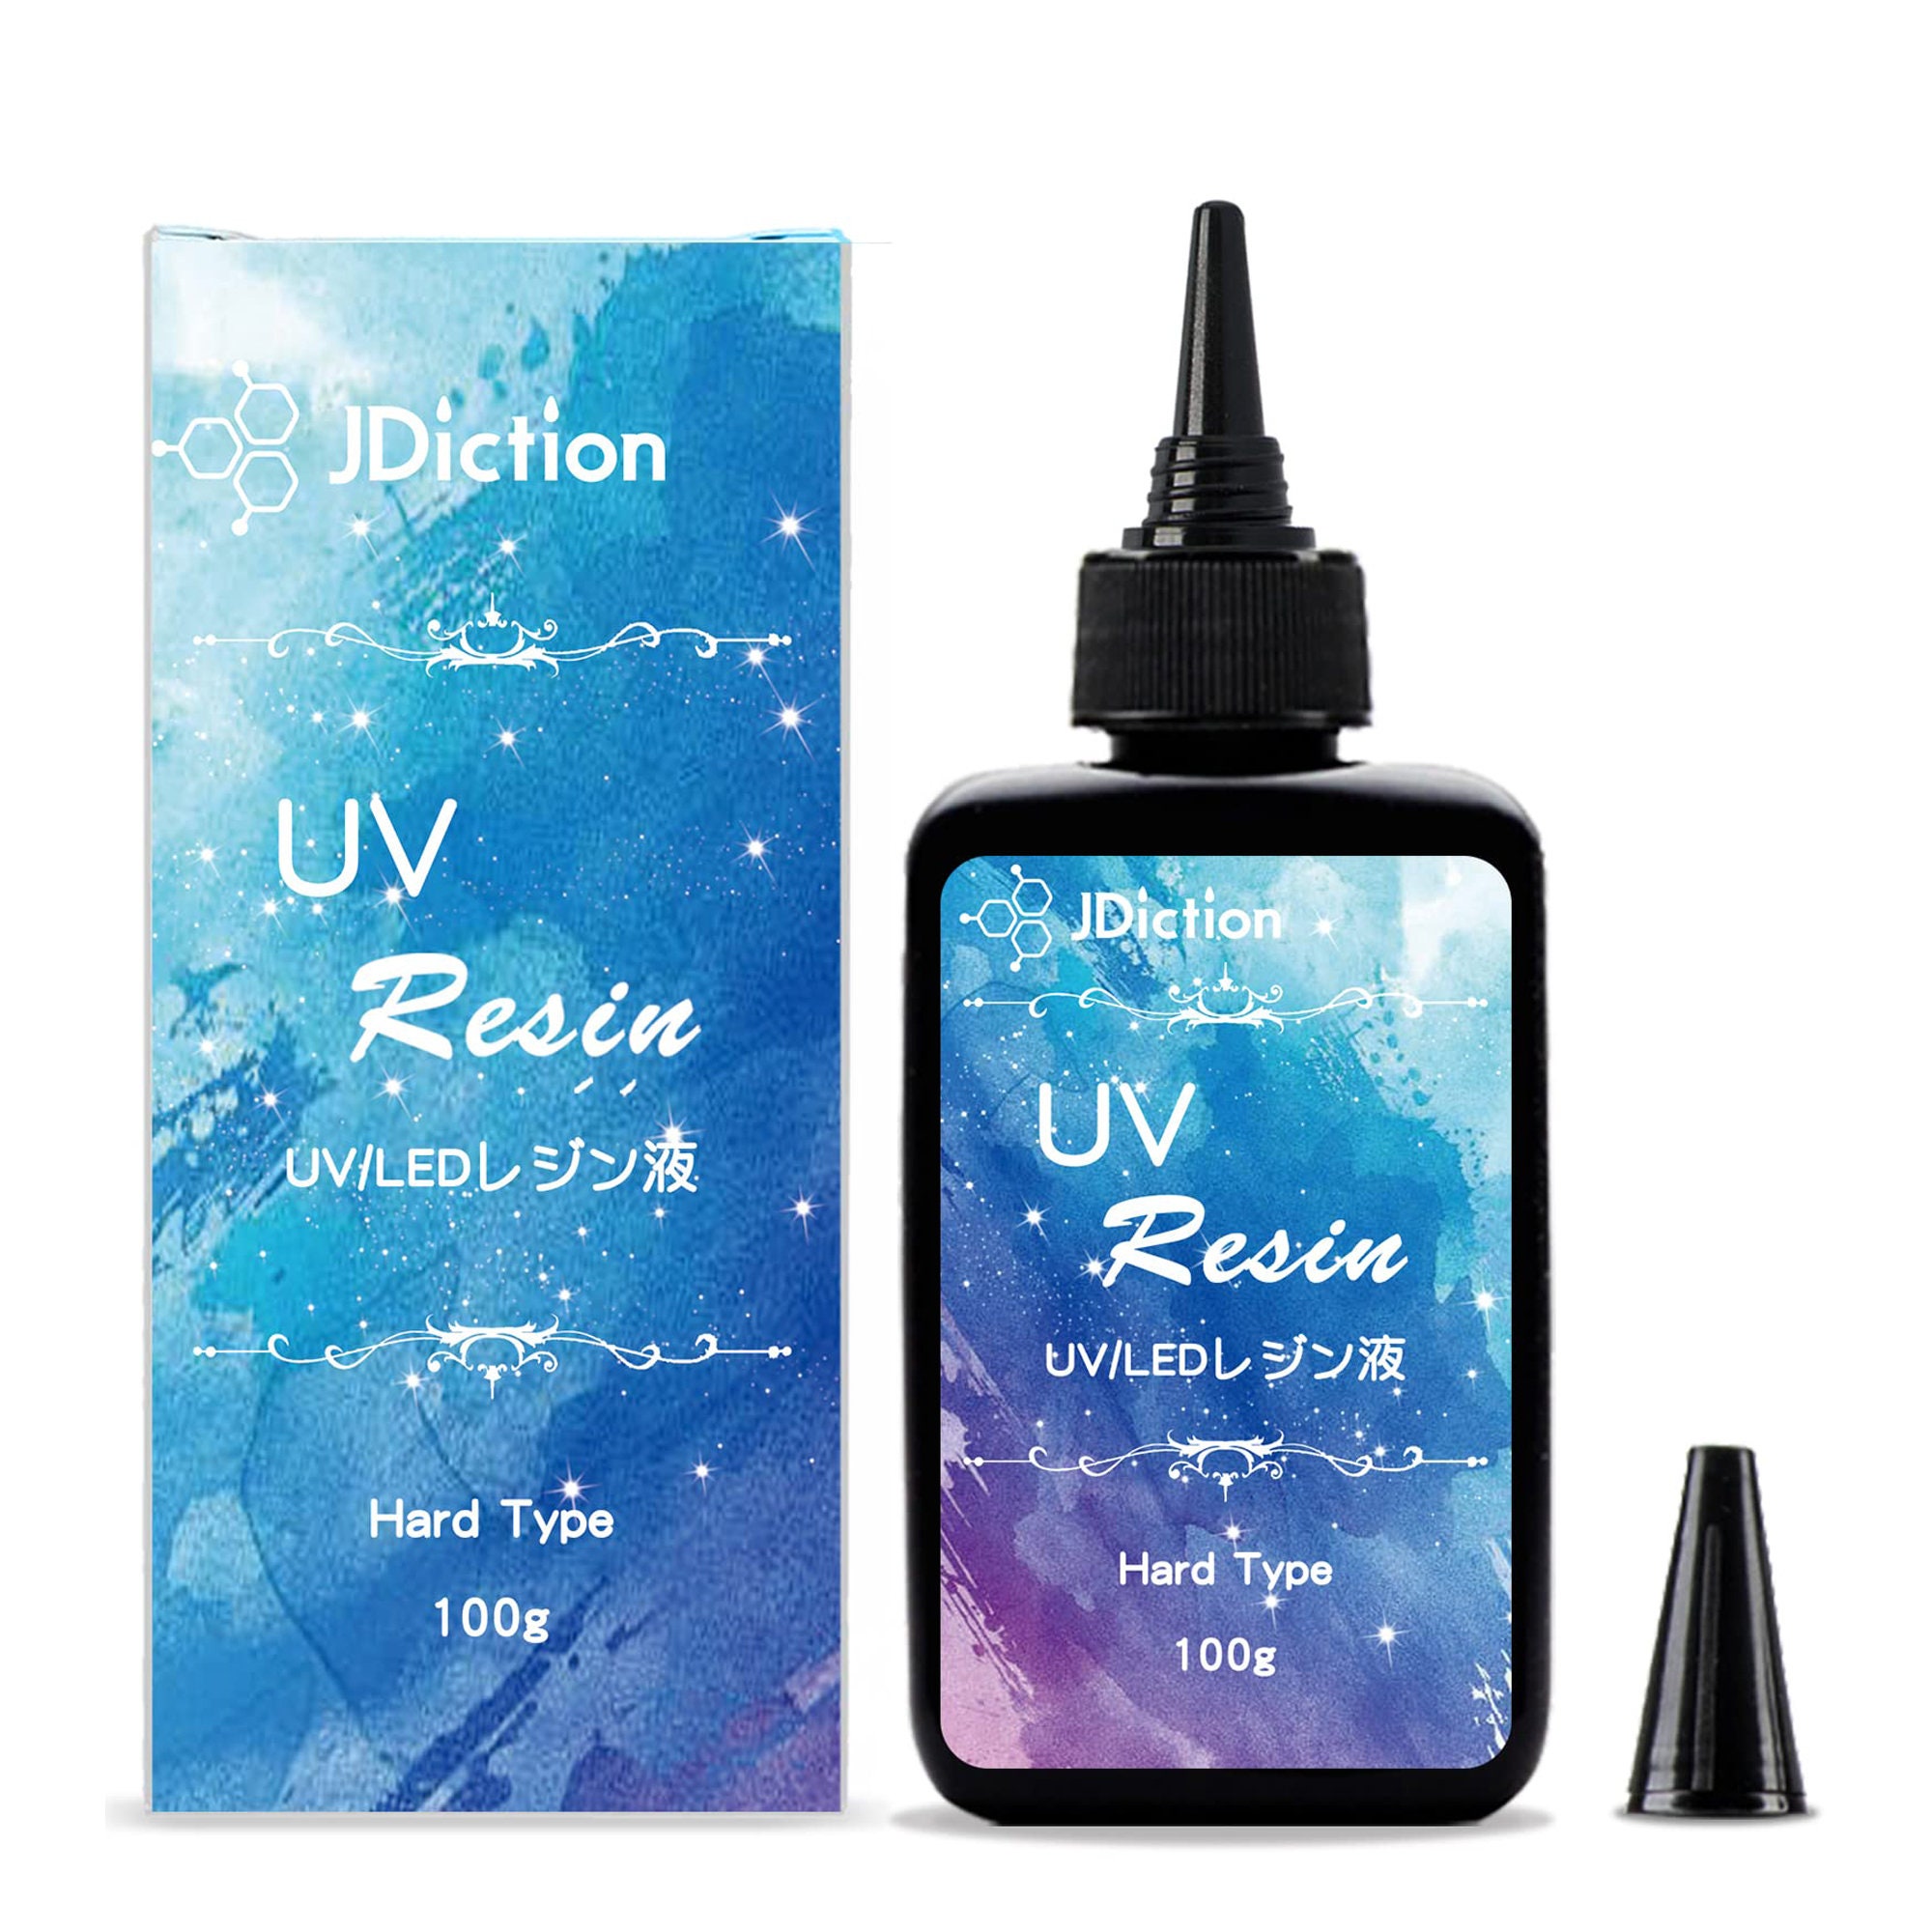 JDiction UV Resin - 200g  Uv resin, Resin diy, Resin crafts